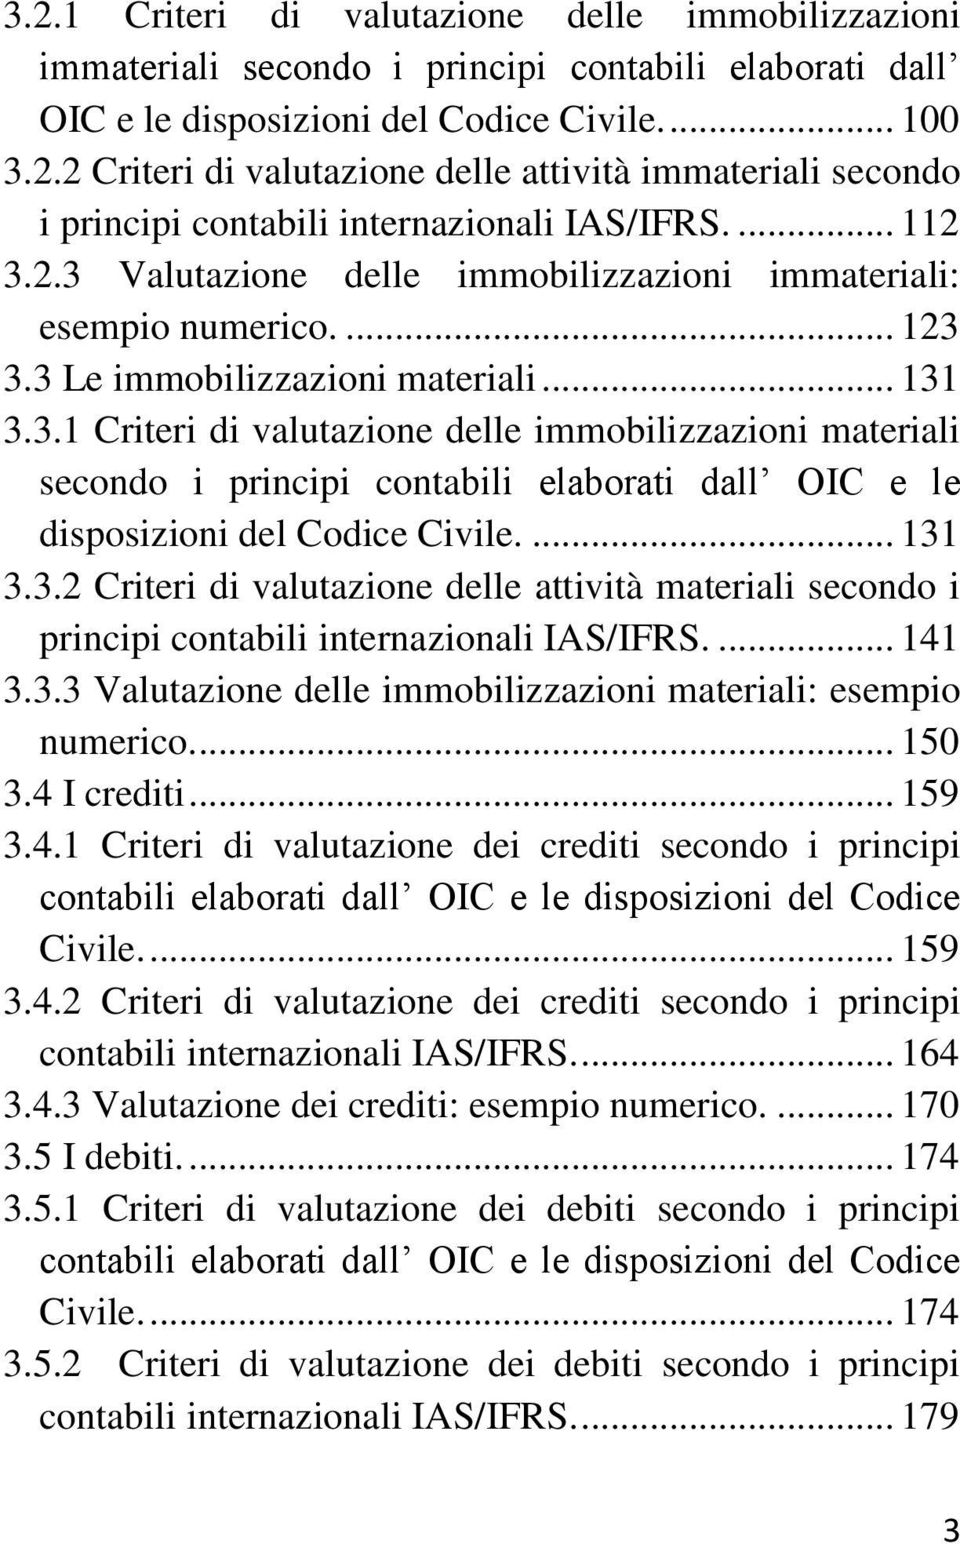 ... 131 3.3.2 Criteri di valutazione delle attività materiali secondo i principi contabili internazionali IAS/IFRS.... 141 3.3.3 Valutazione delle immobilizzazioni materiali: esempio numerico.... 150 3.